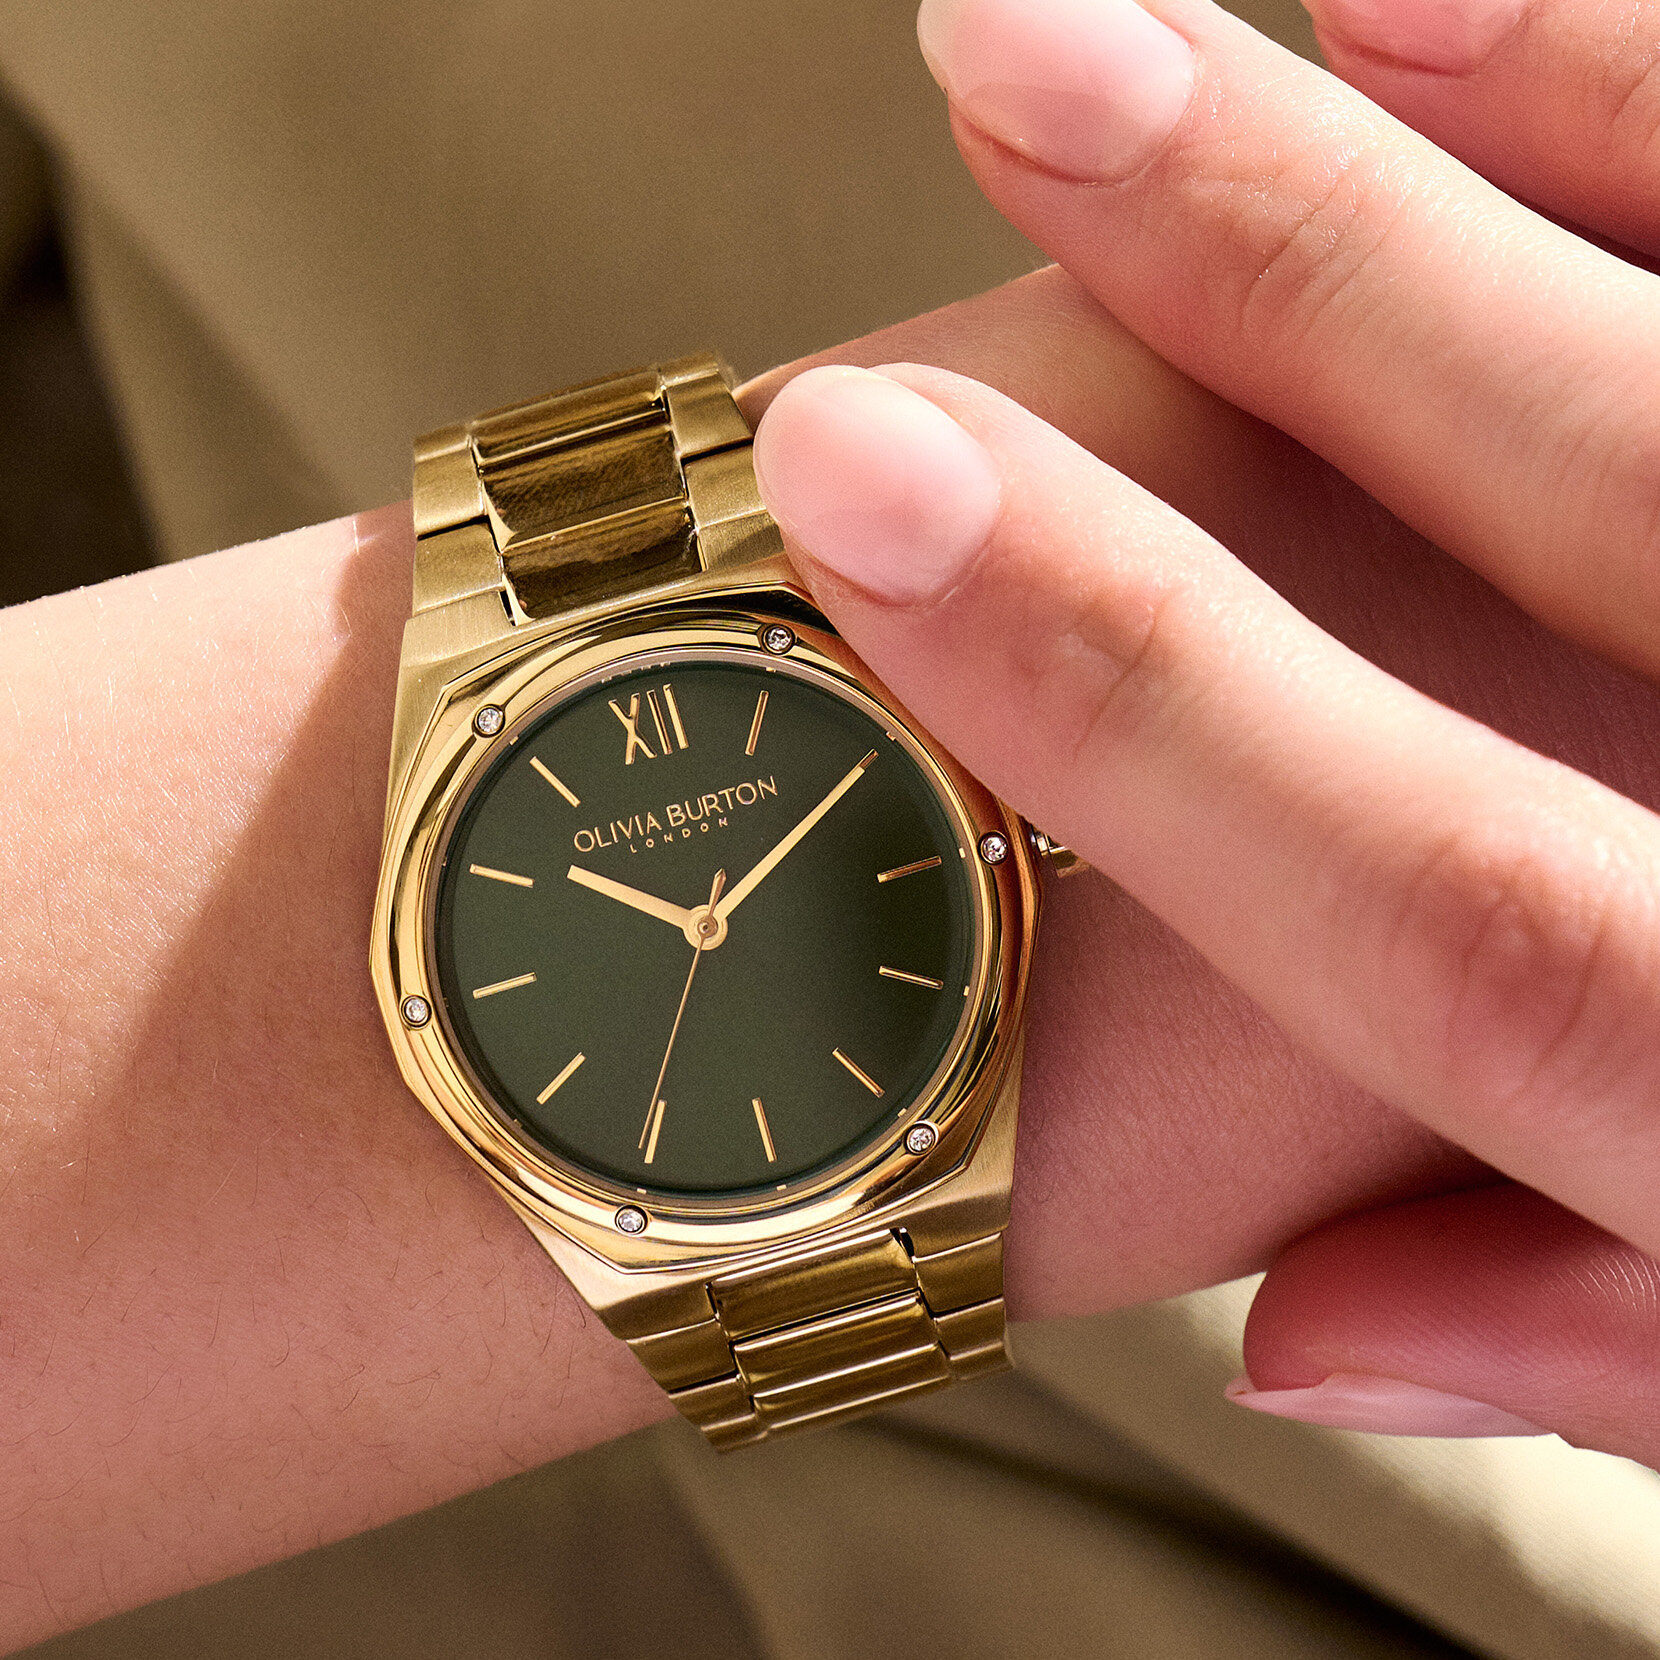 33mm Hexa Green & Gold Bracelet Watch